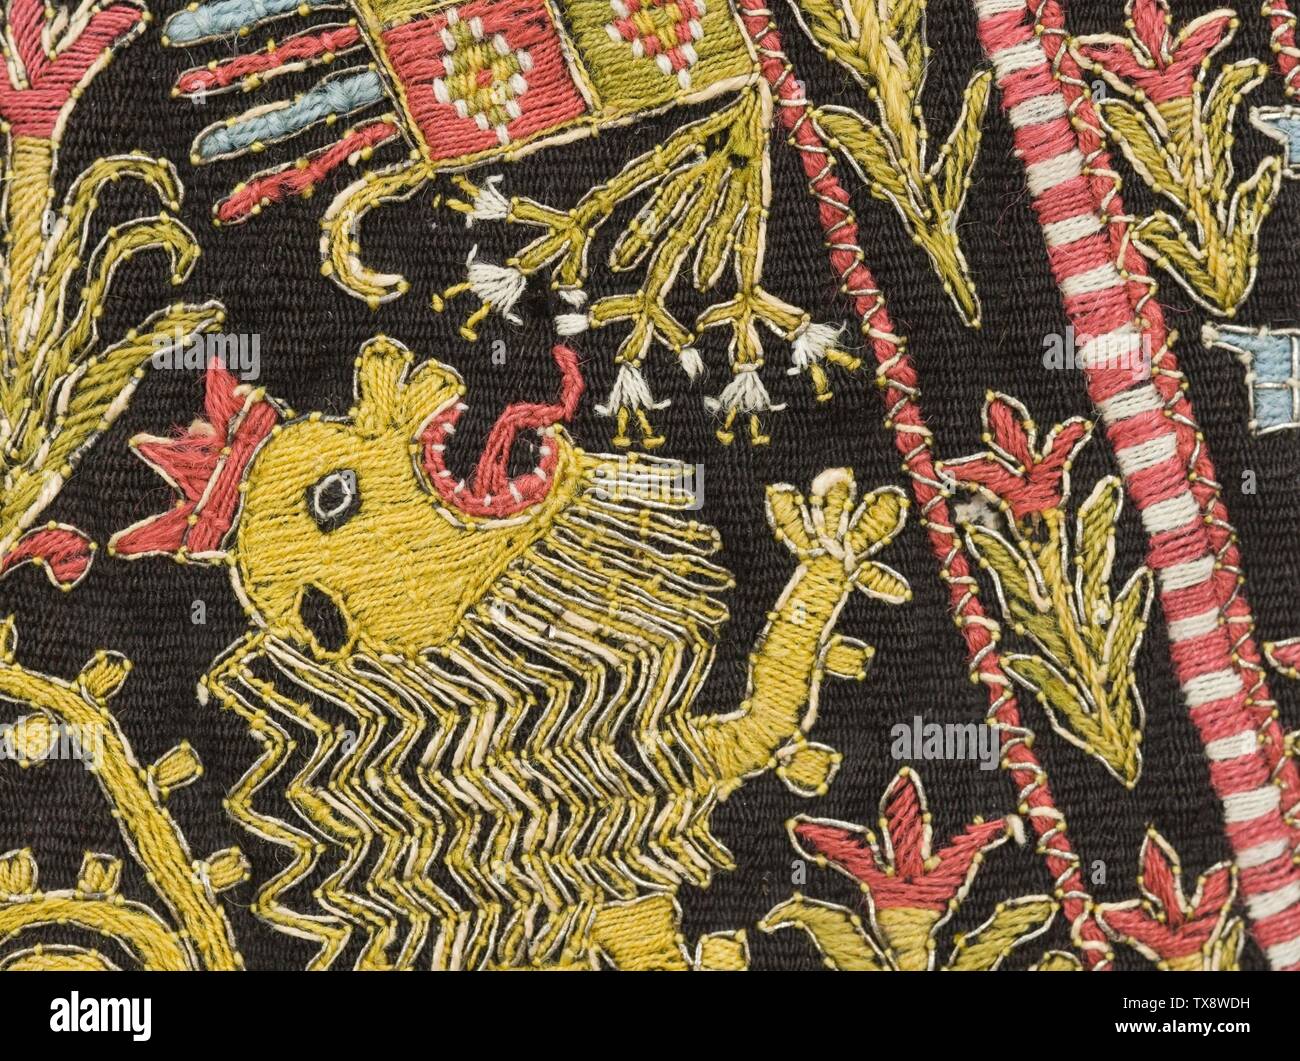 Túnica procesional del hombre (imagen 10 de 12); Perú, siglo 17, trajes de época  colonial; ropa de abrigo fibra Camelid en tejido plano con urdimbre,  bordado con hilo metálico y seda, con